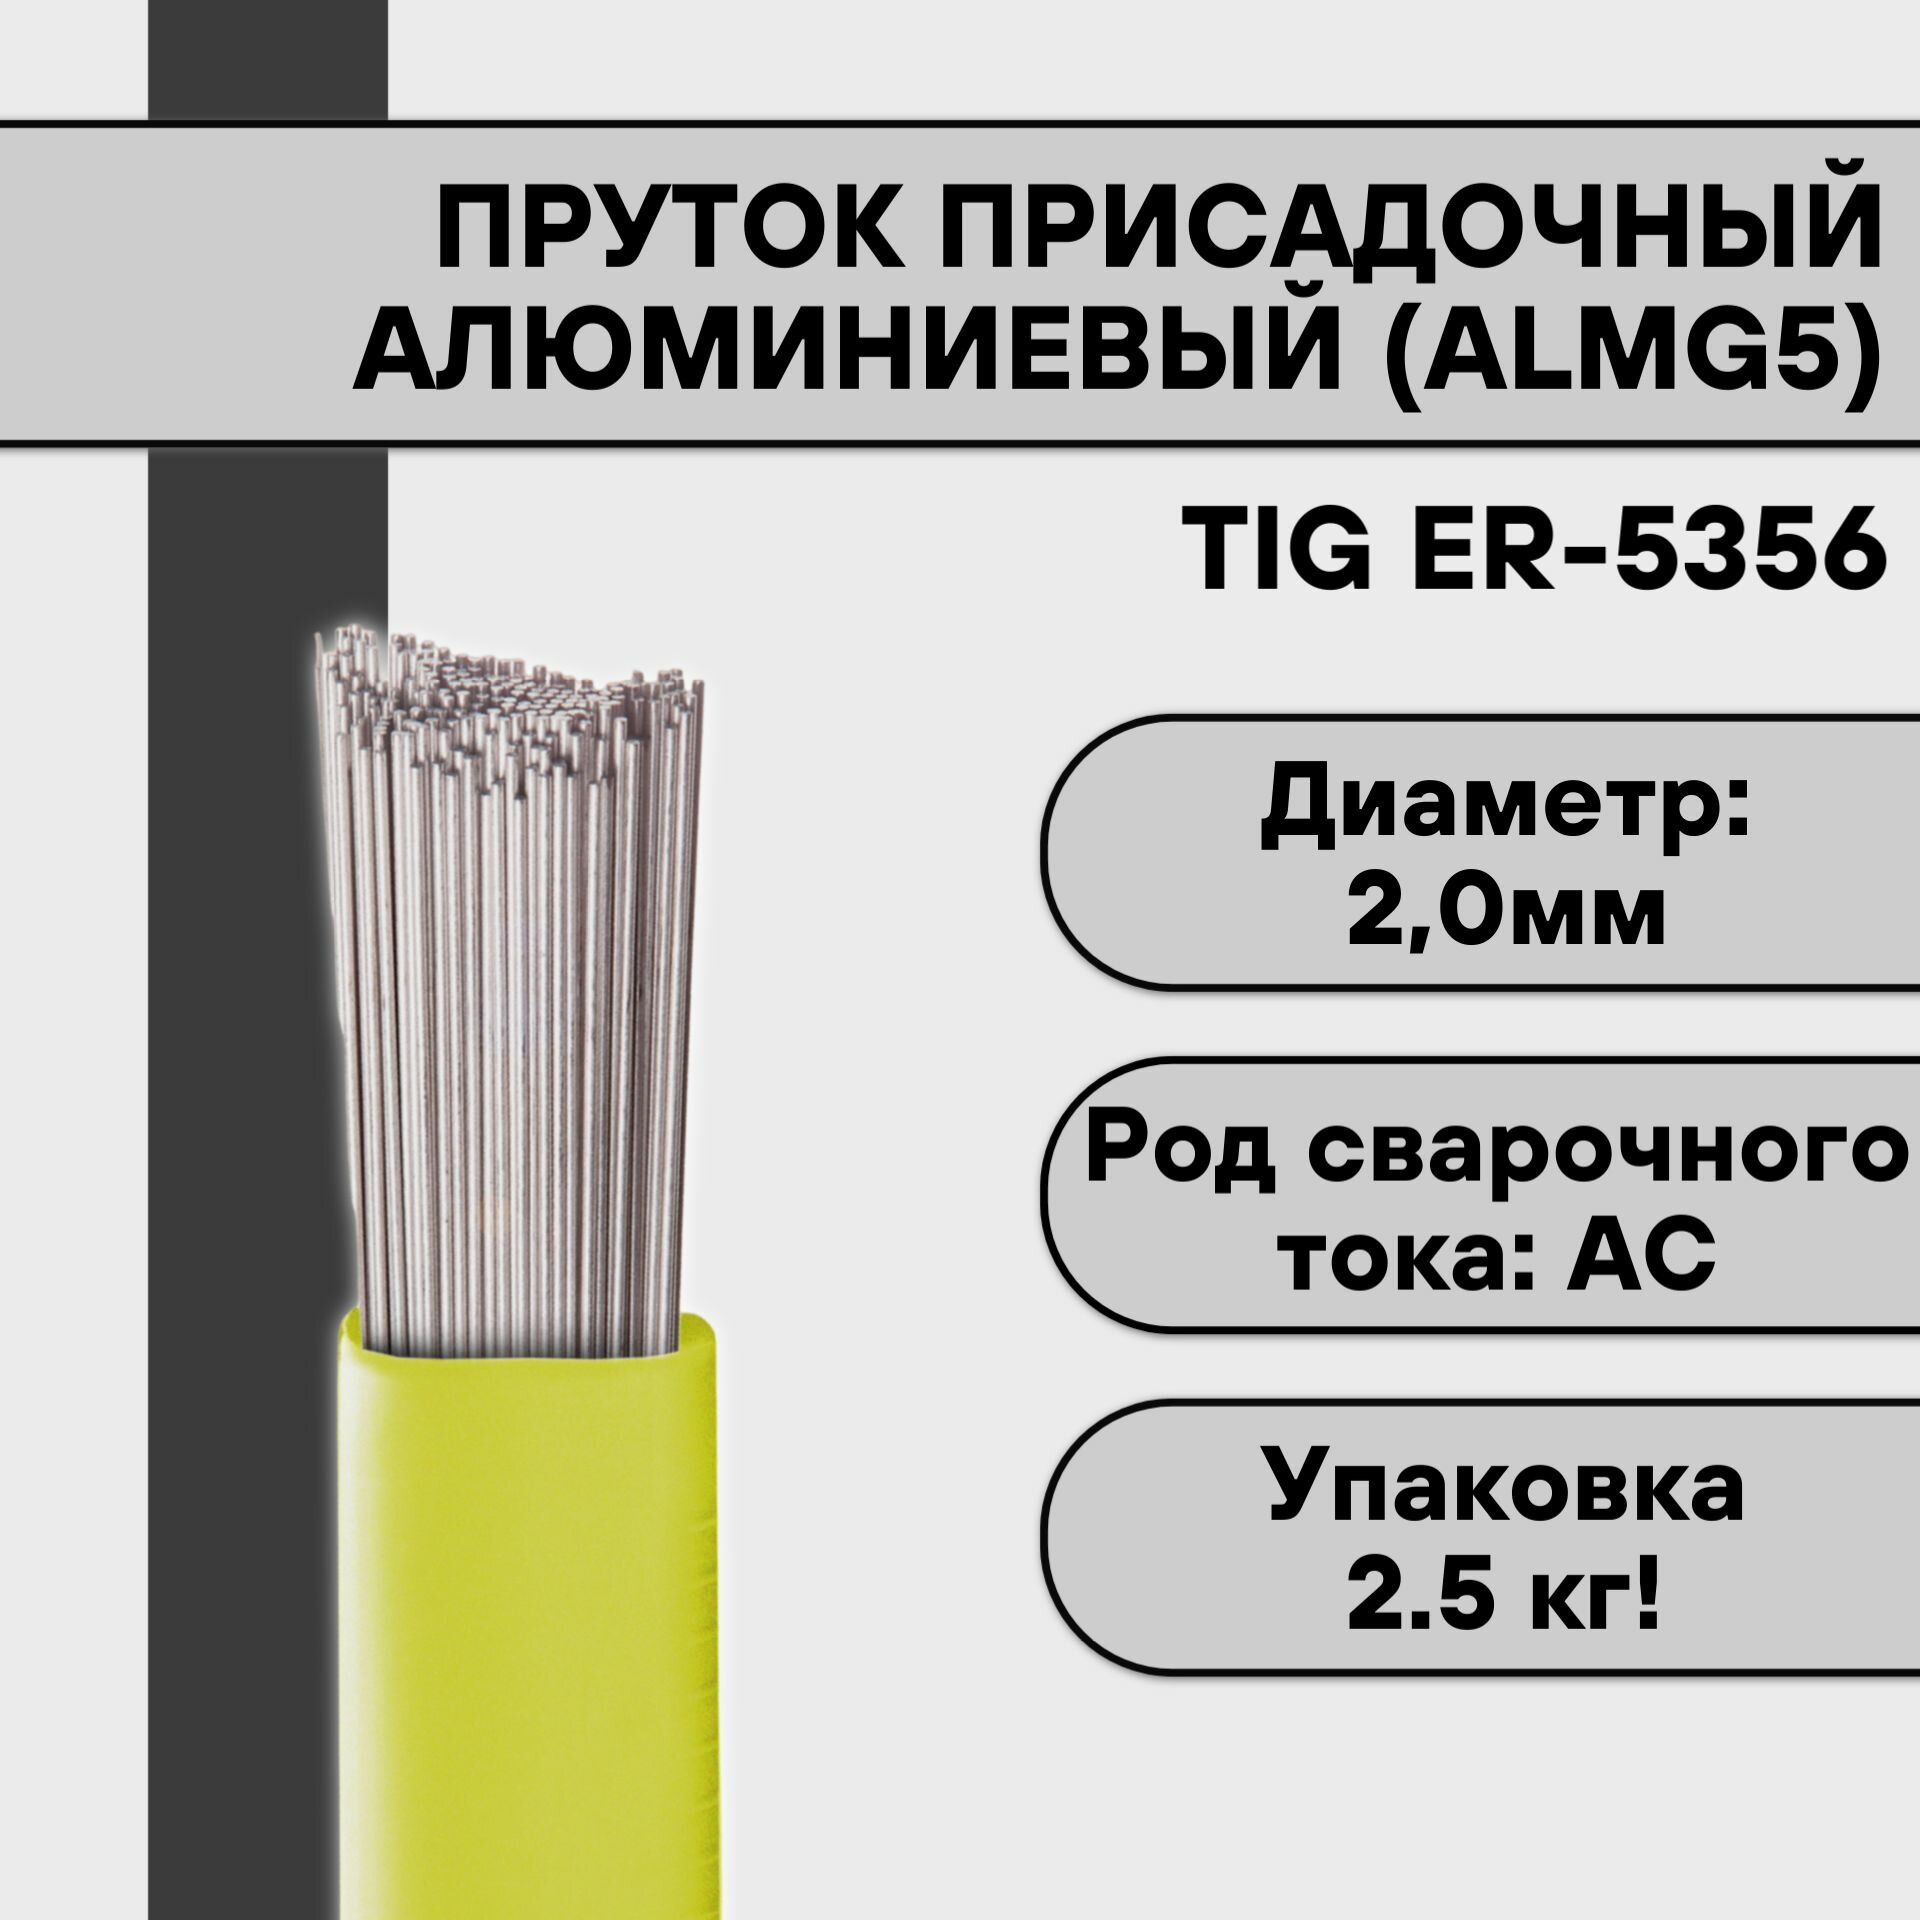 Пруток присадочный алюминиевый для TIG сварки ER-5356 (AlMg5) ф 2,0 мм (2,5 кг)